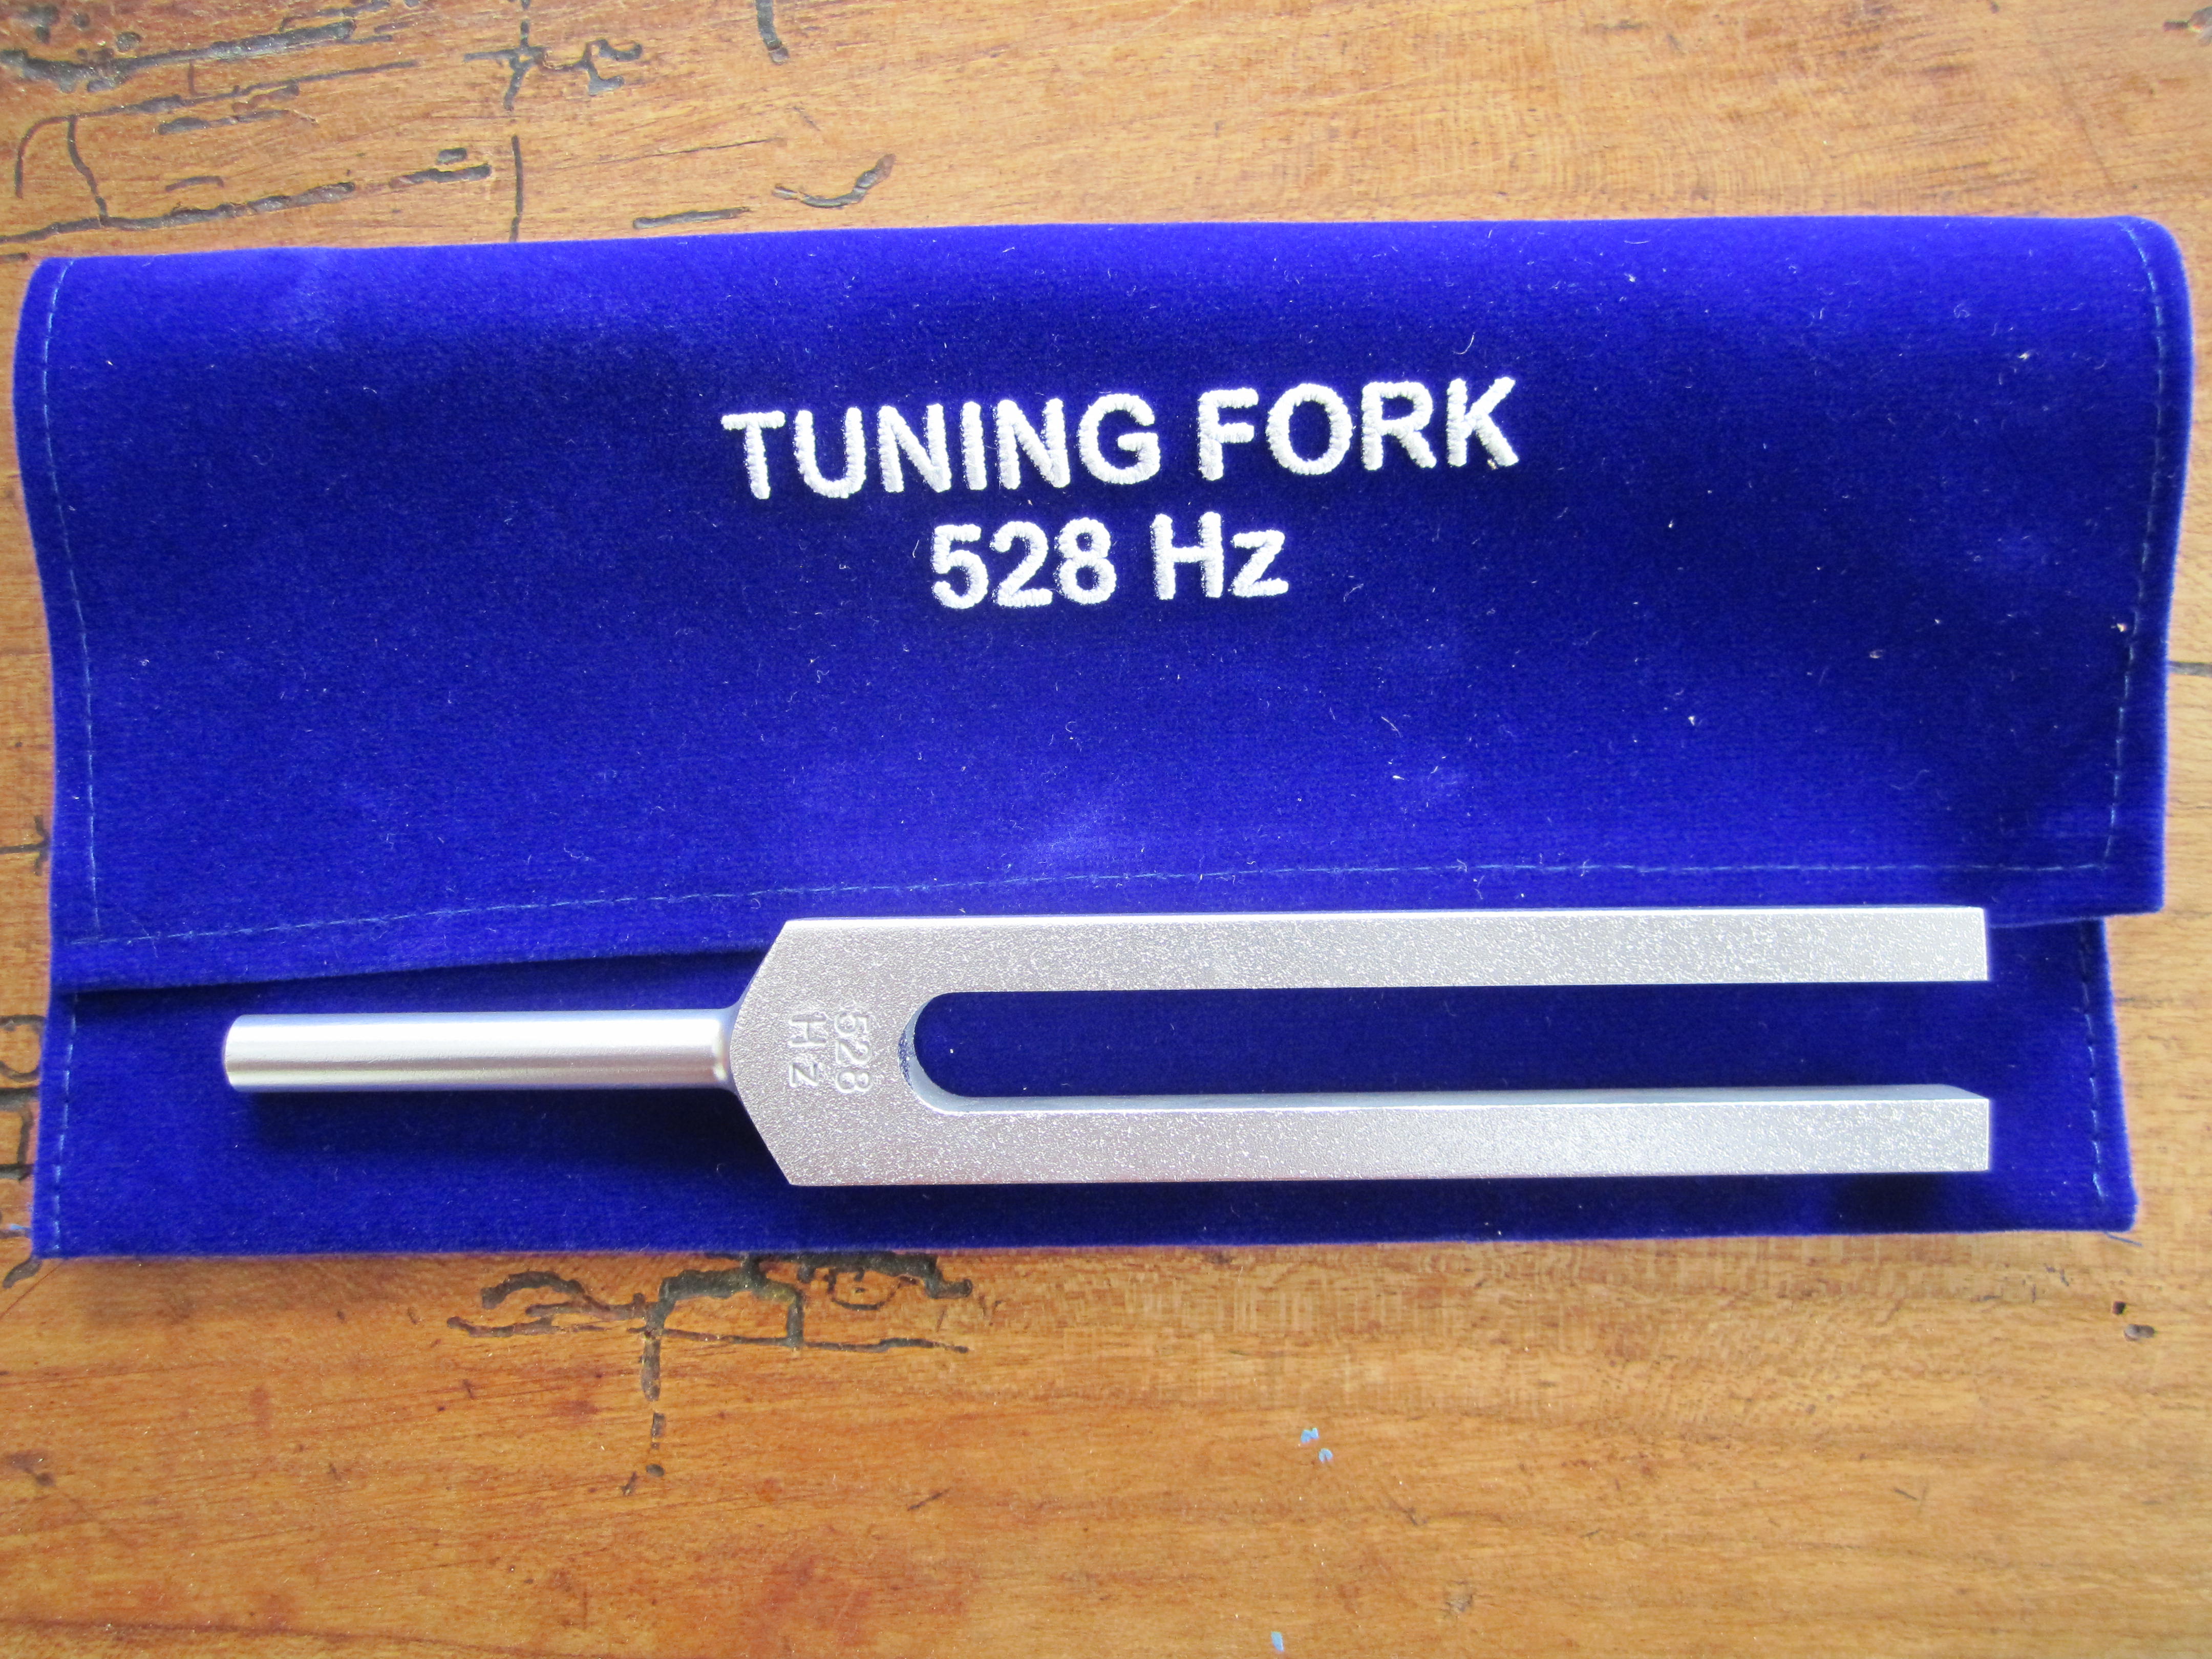 tuning fork 528 hz benefits